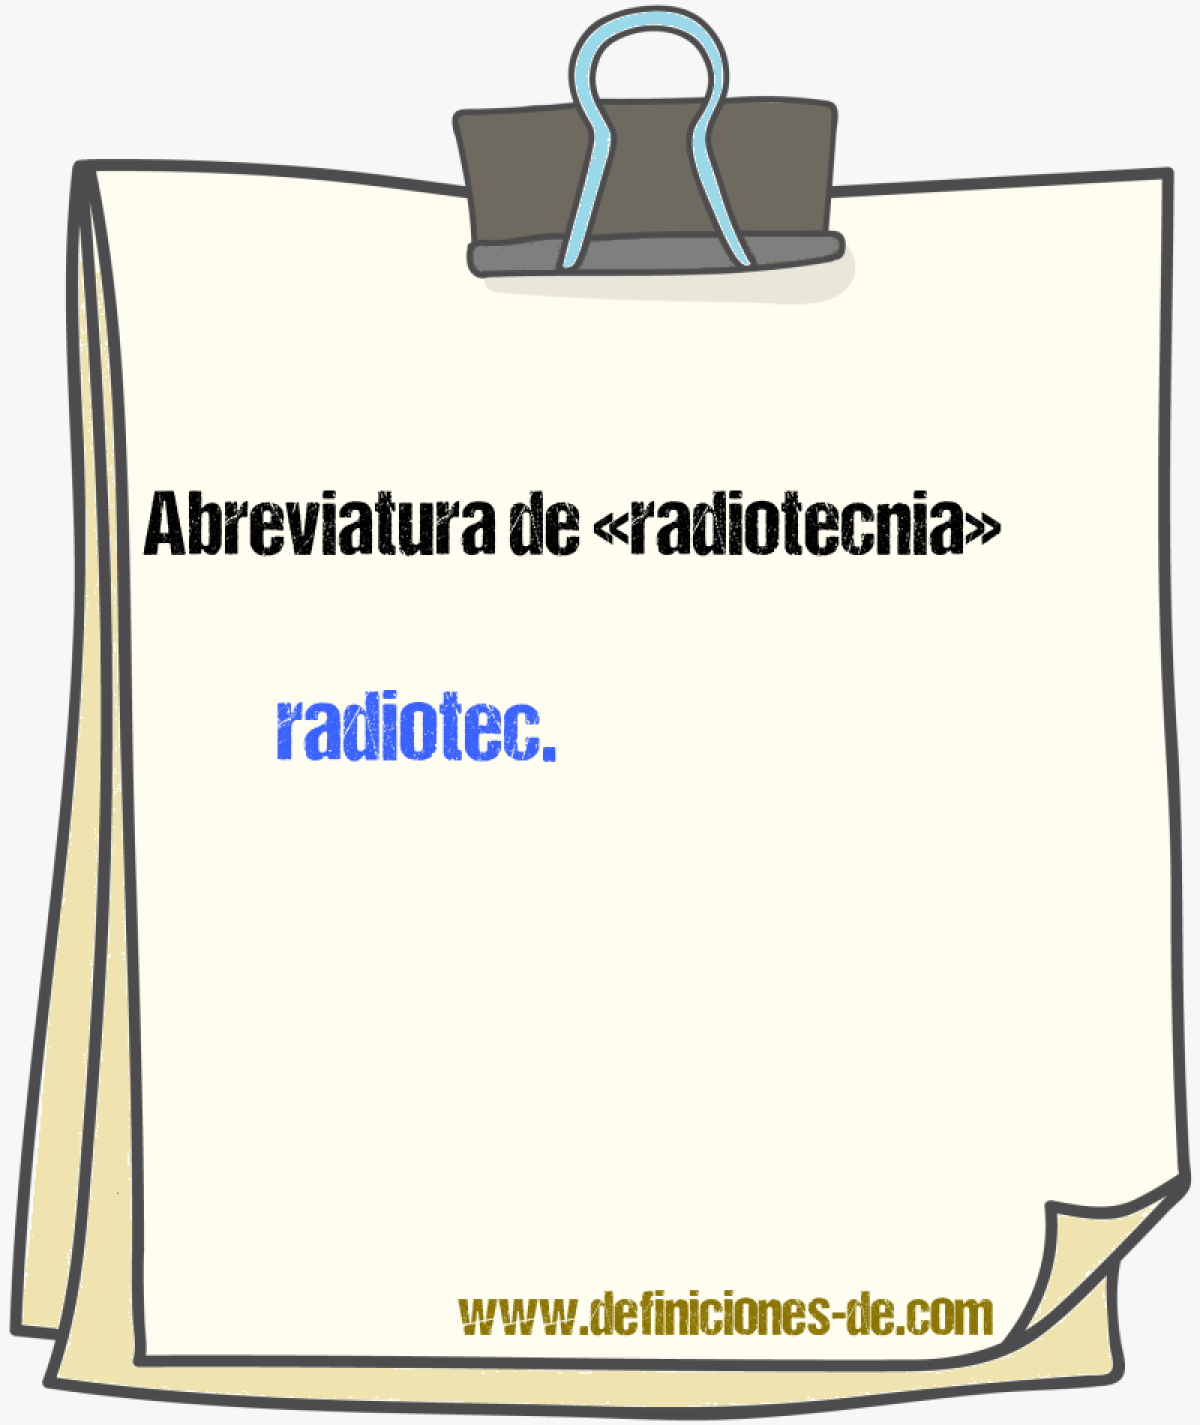 Abreviaturas de radiotecnia